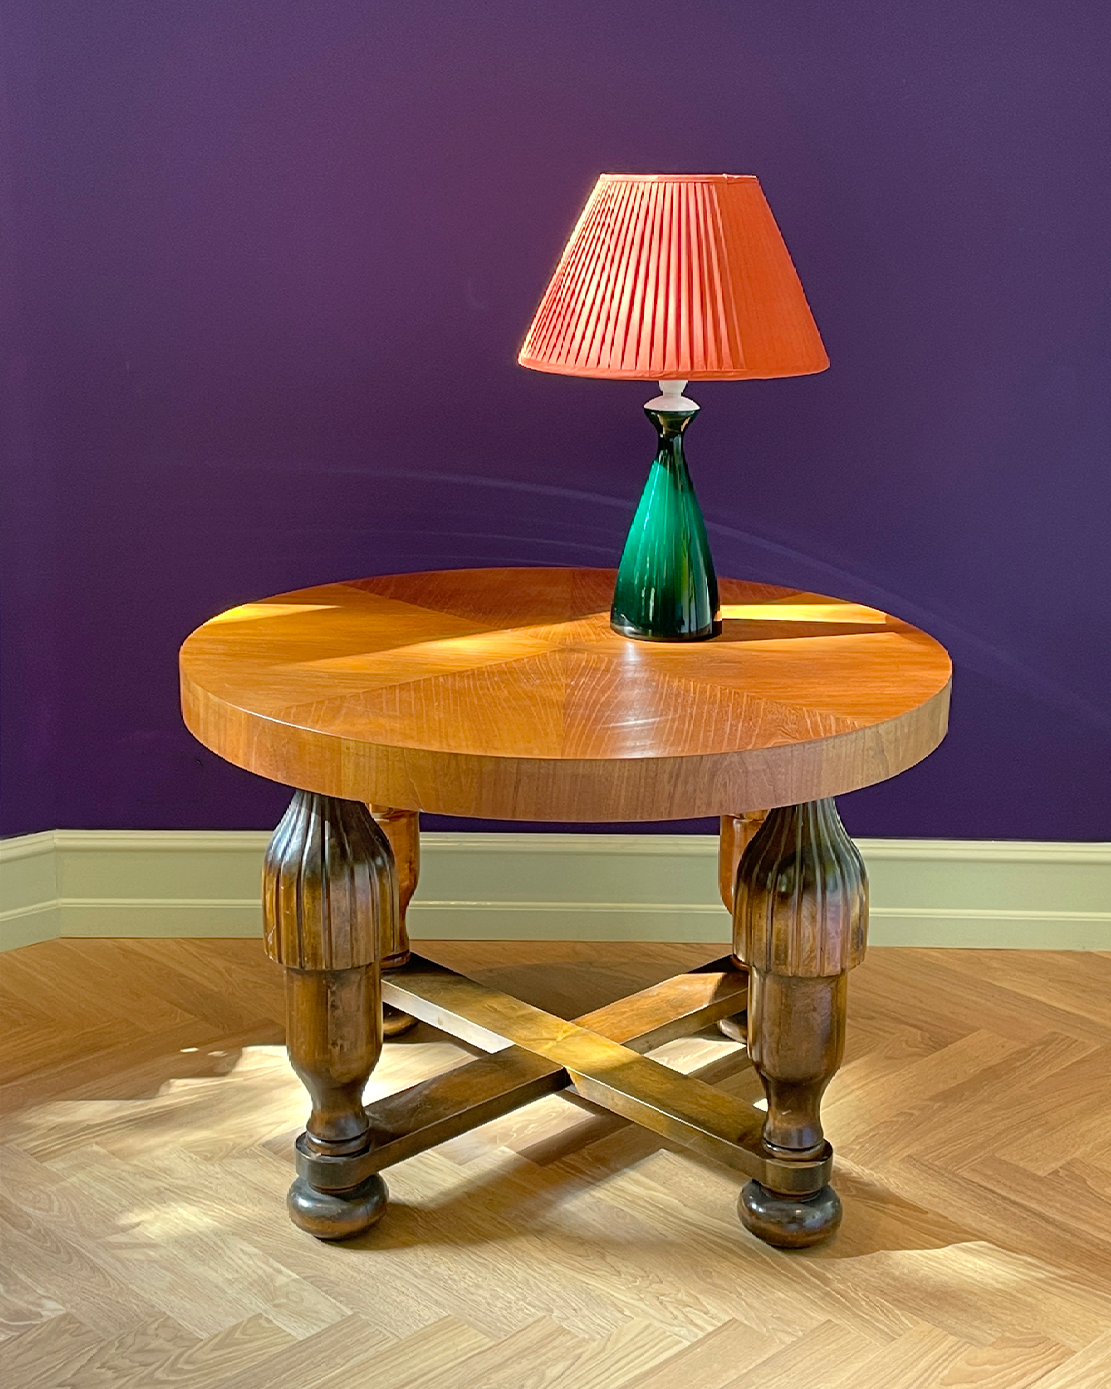 Antique Art Nouveau Table